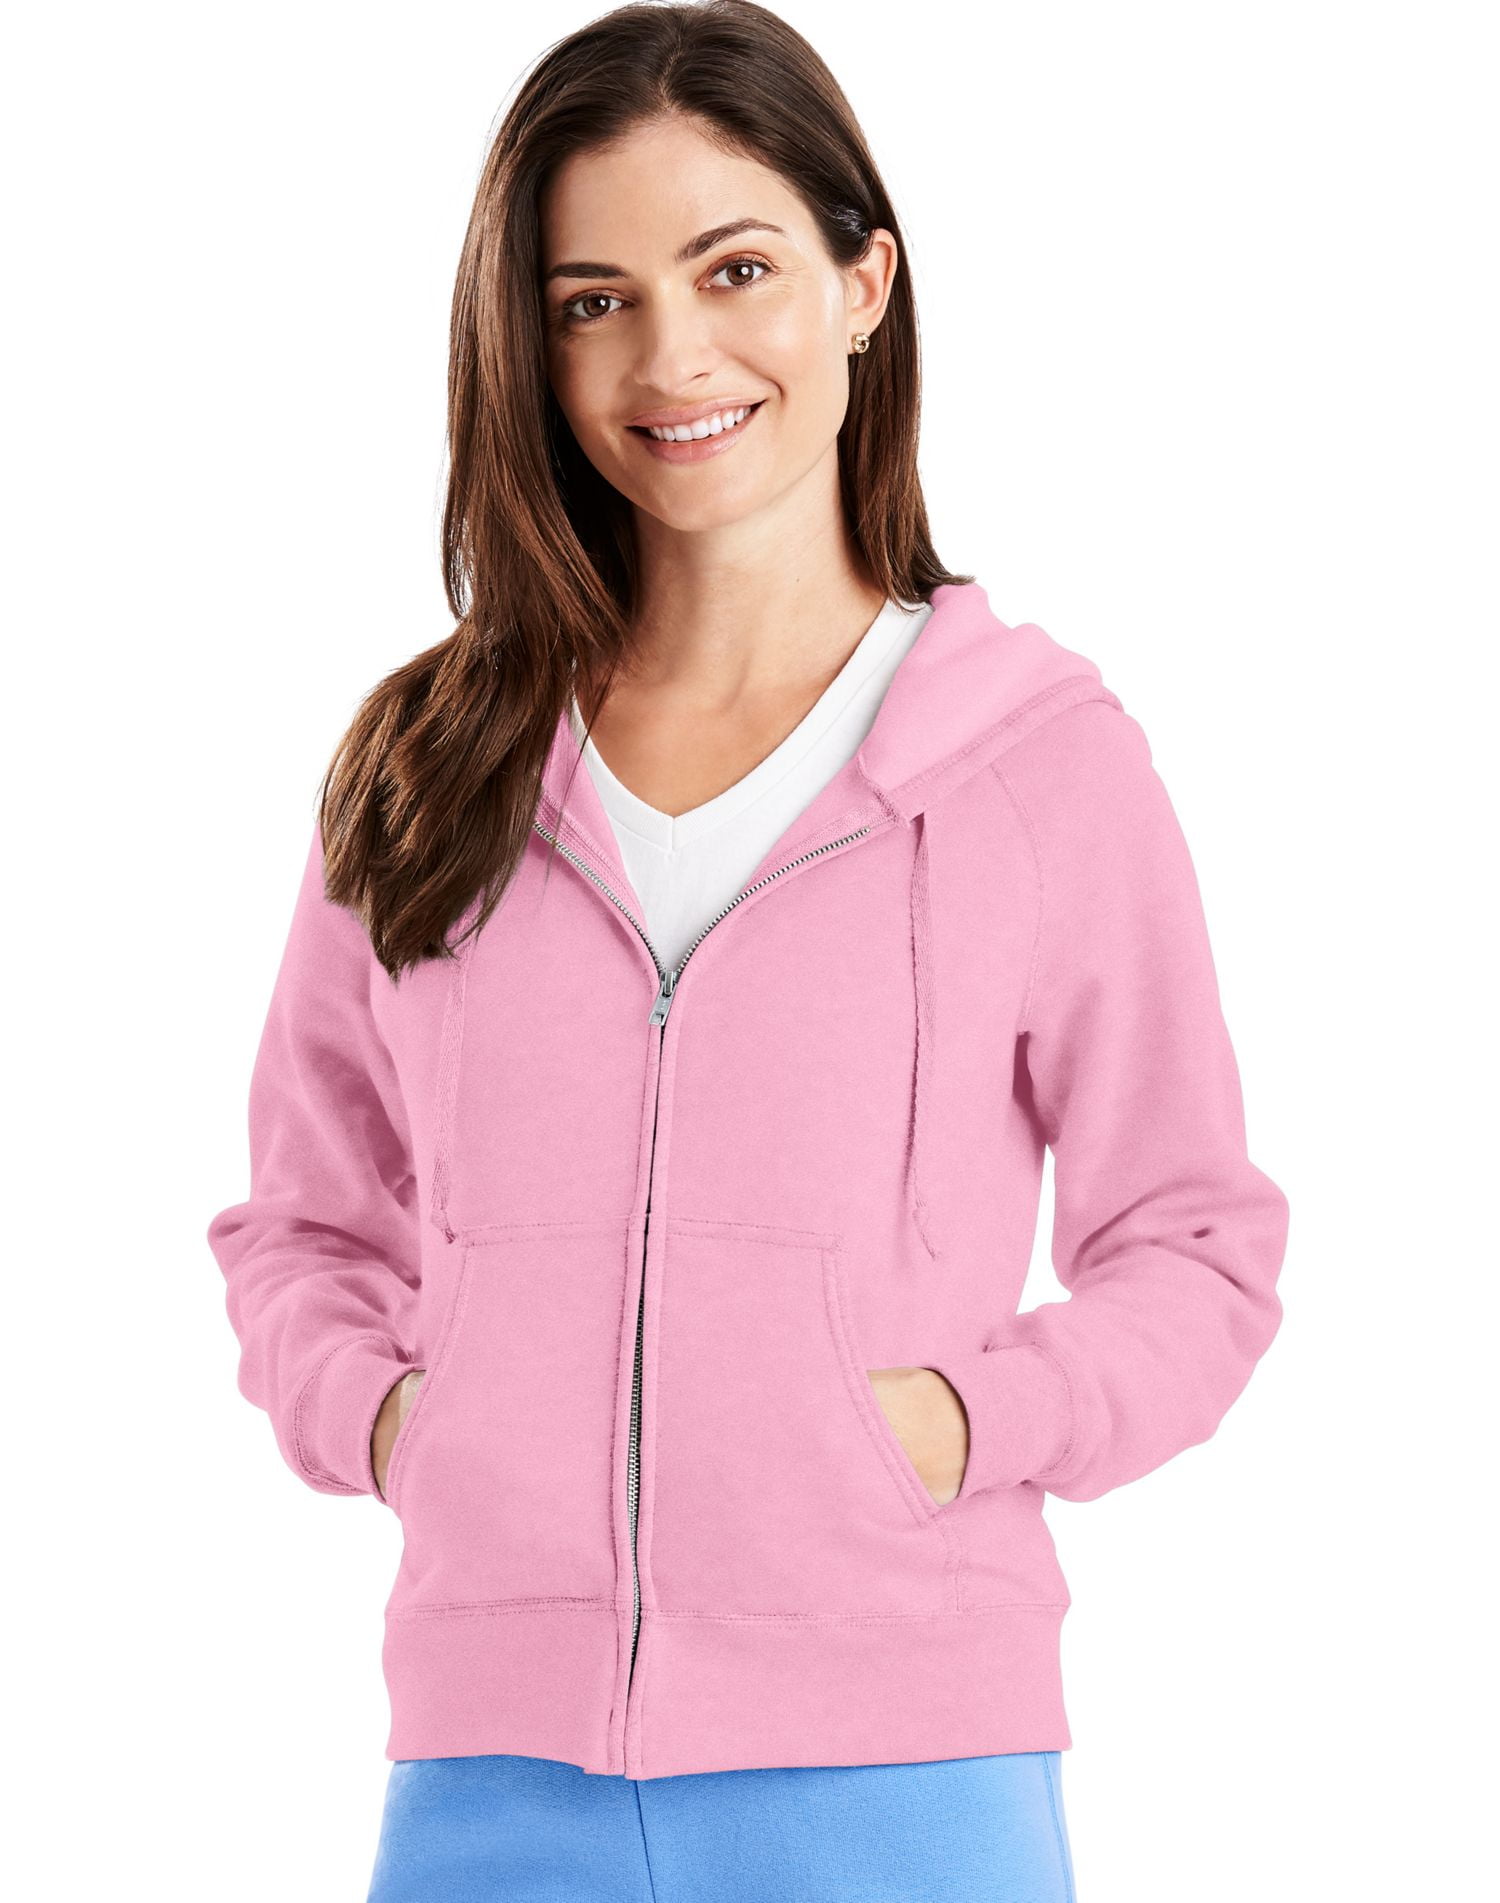 W280 Hoodie Sweatshirt Women's 8 oz 80/20 Full-Zip - Walmart.com